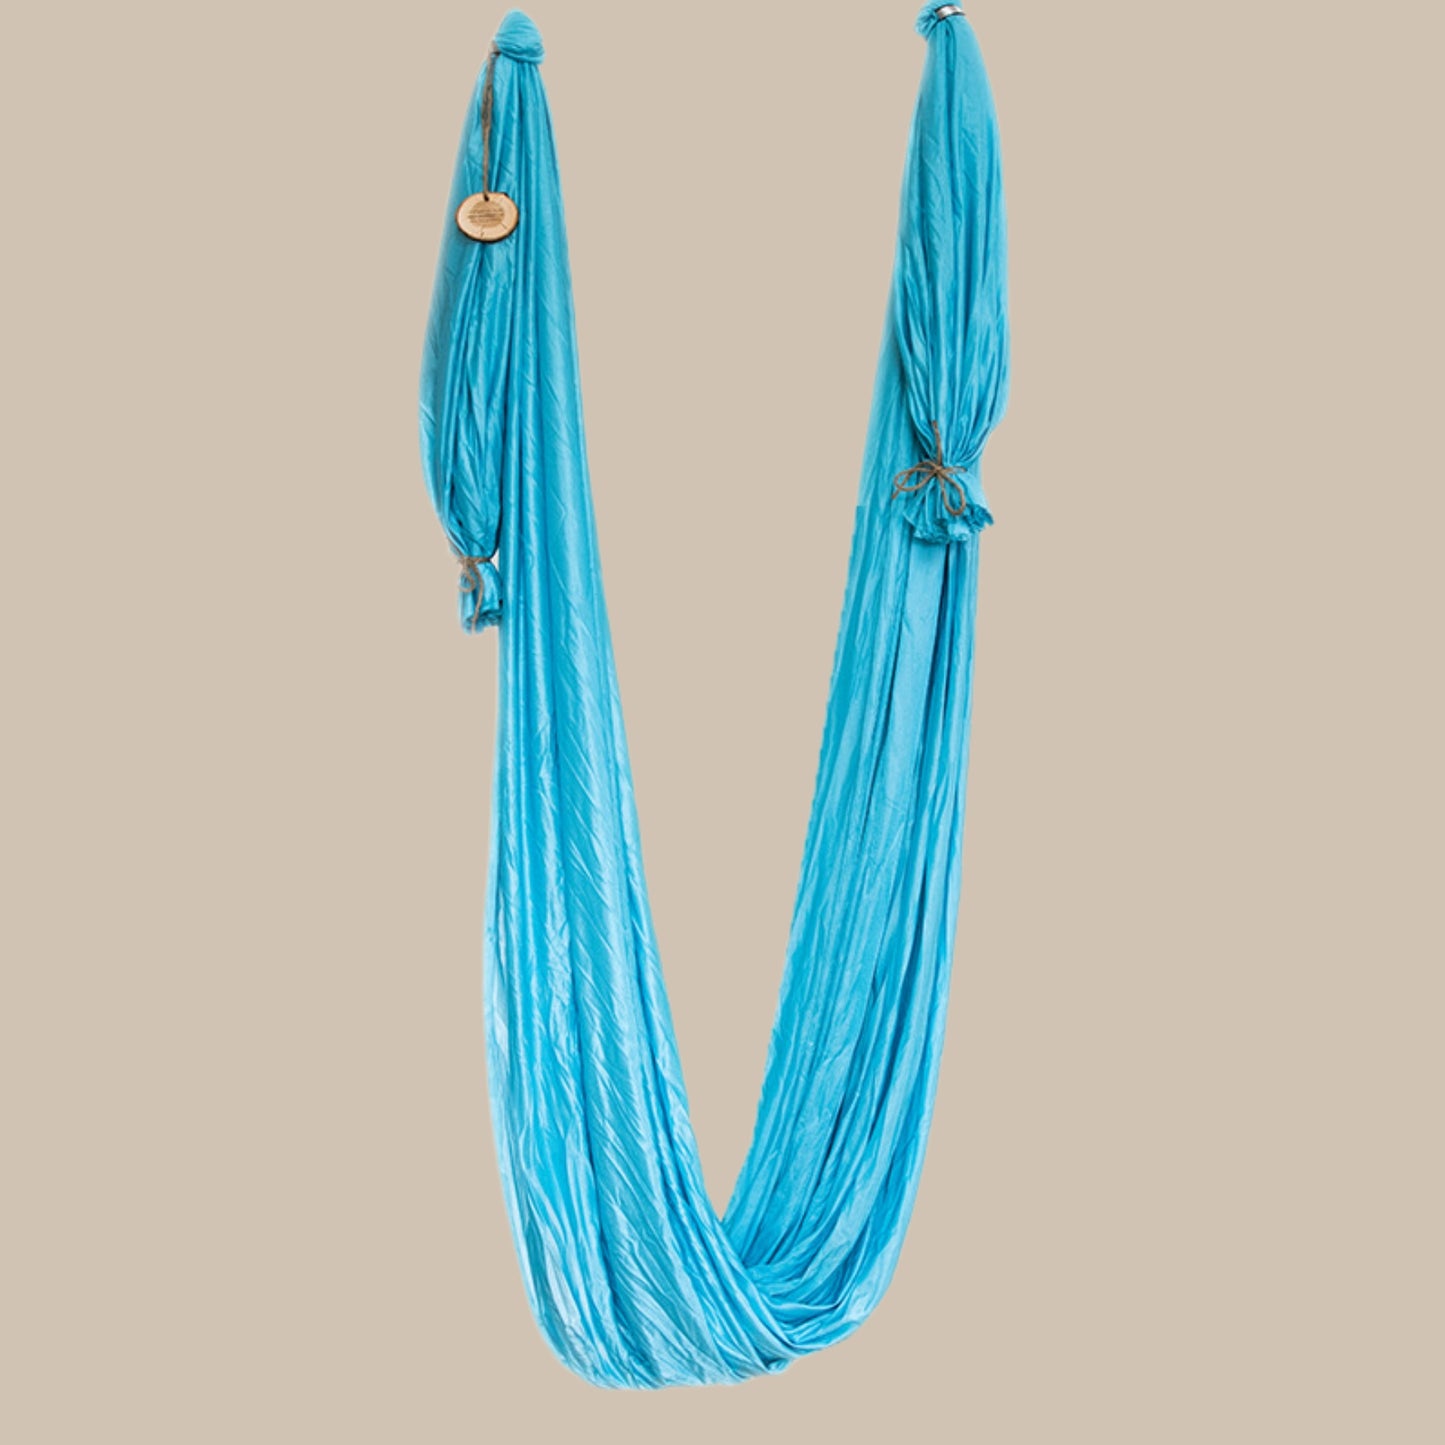 Komplett-Set: Aerial Yogatuch in sanftem Türkisblau mit Aufhängung